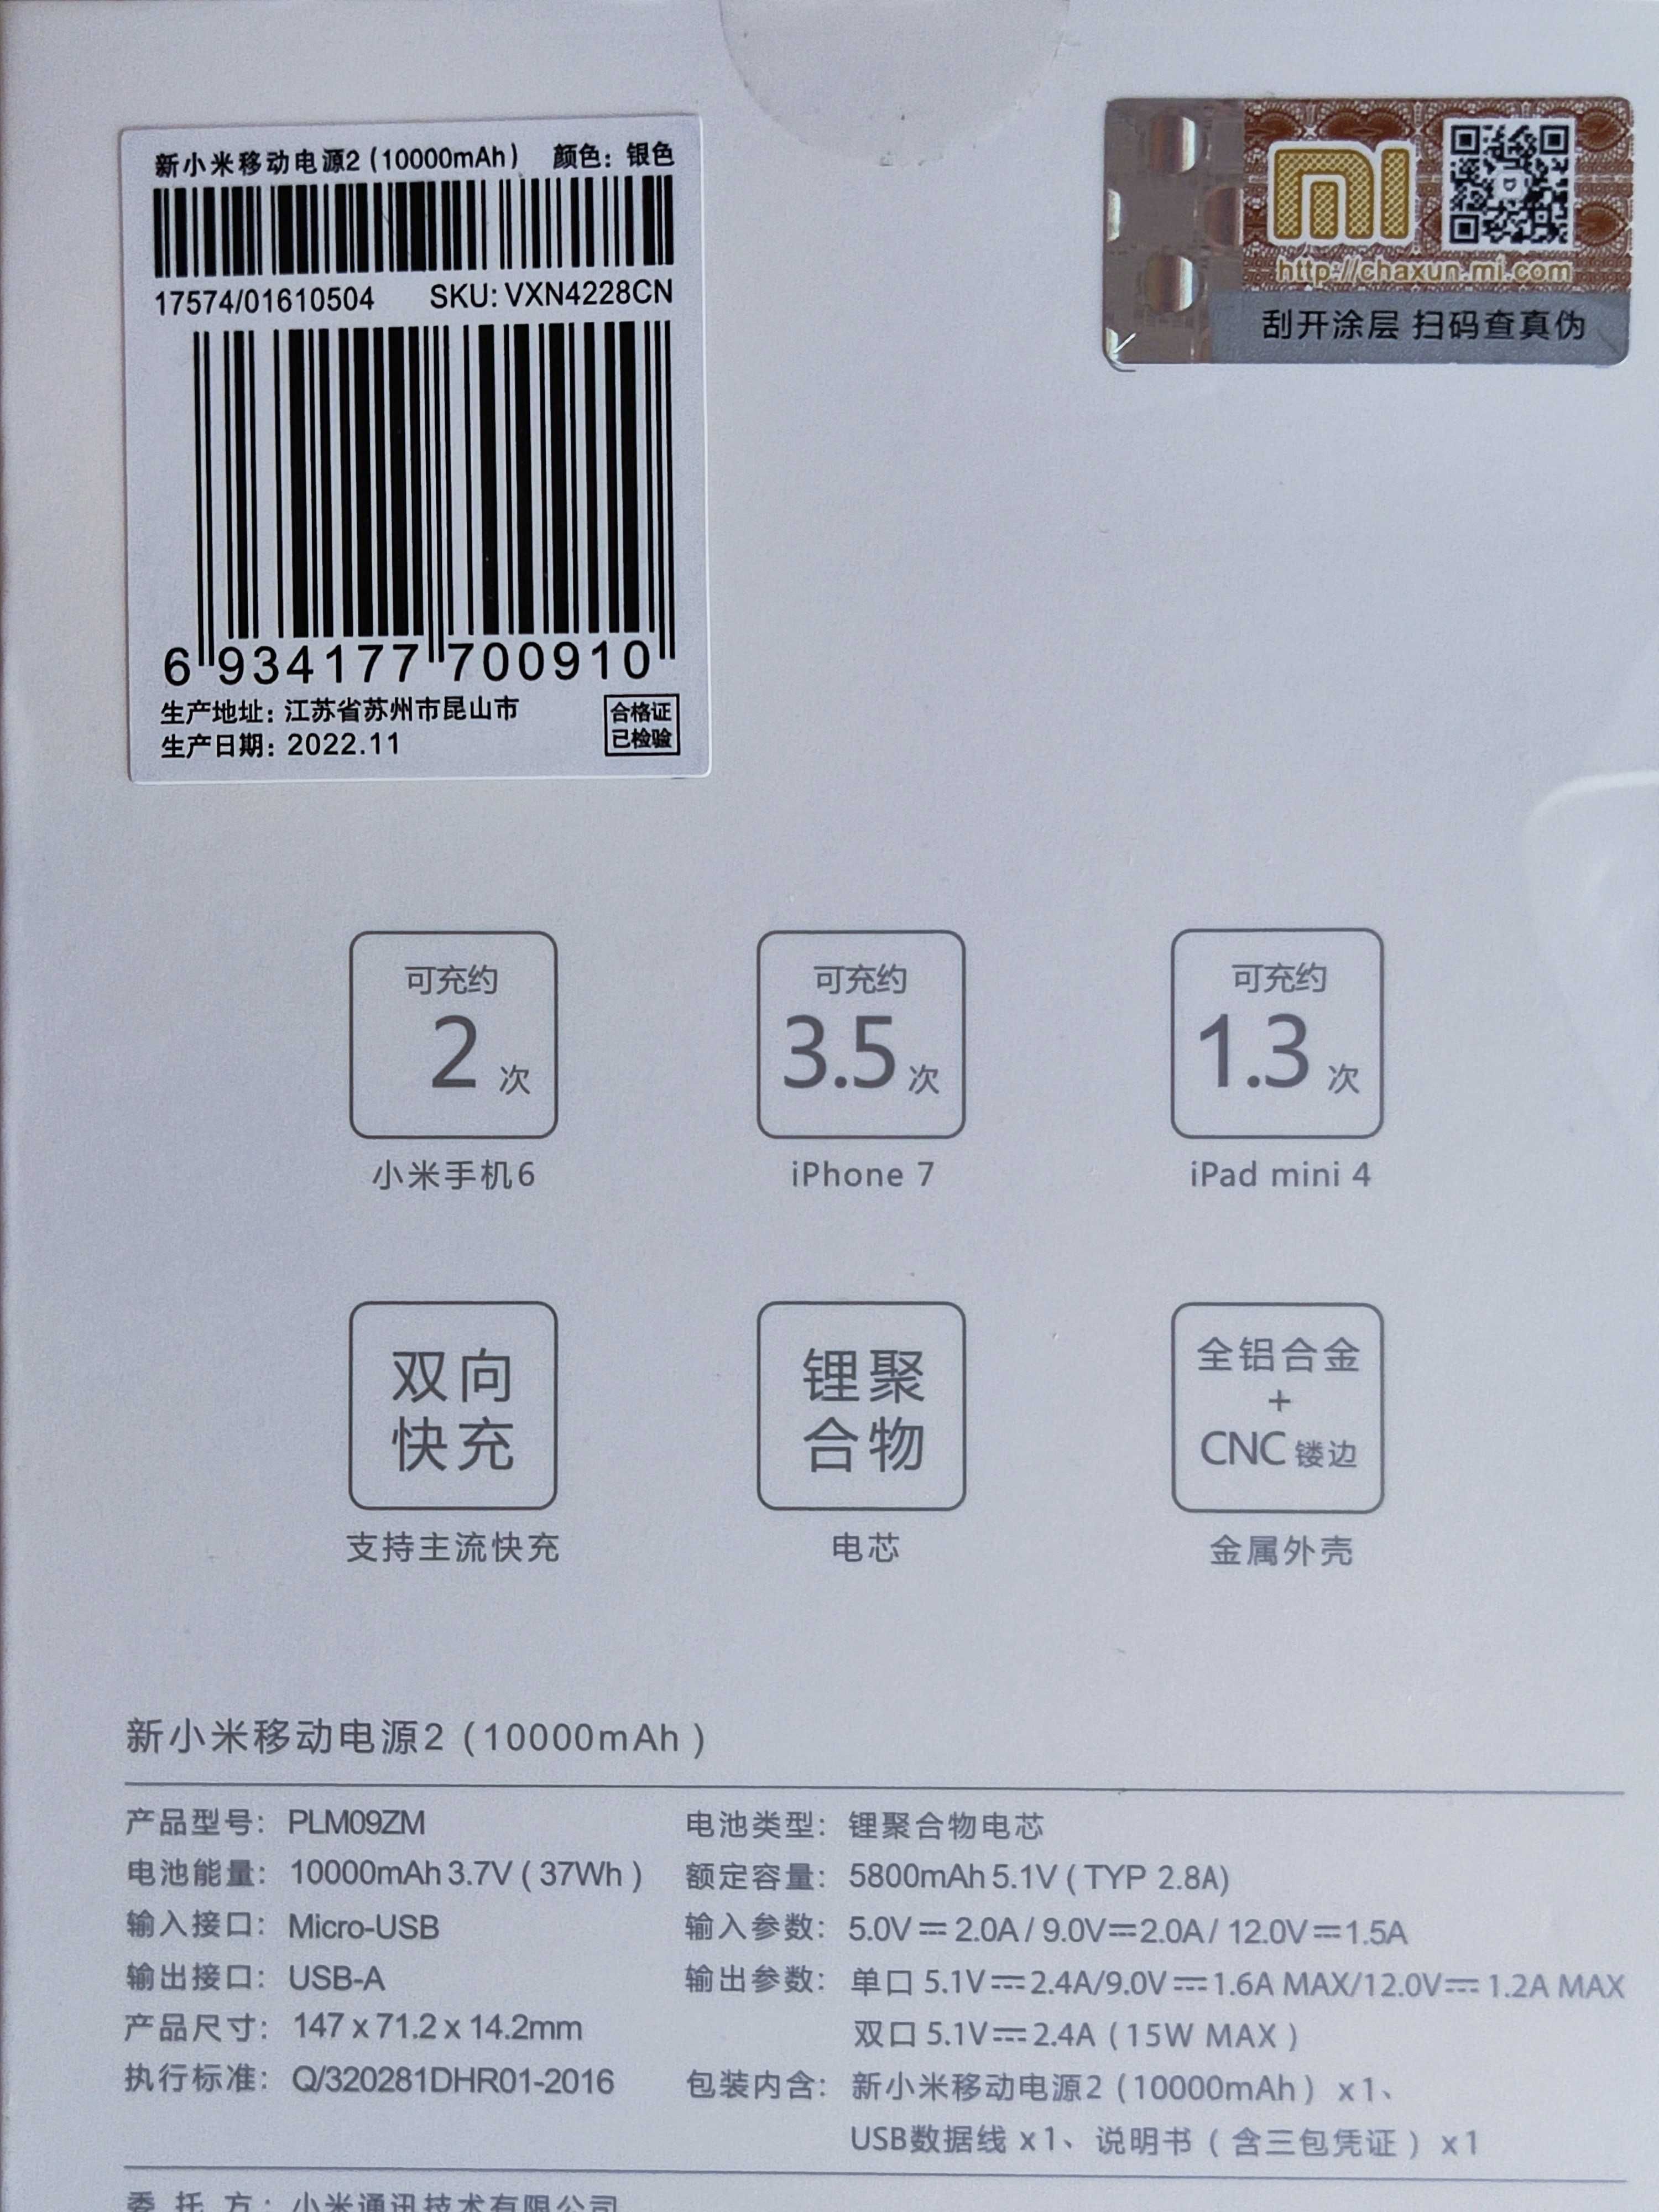 Power Bank Xiaomi 10000mAh